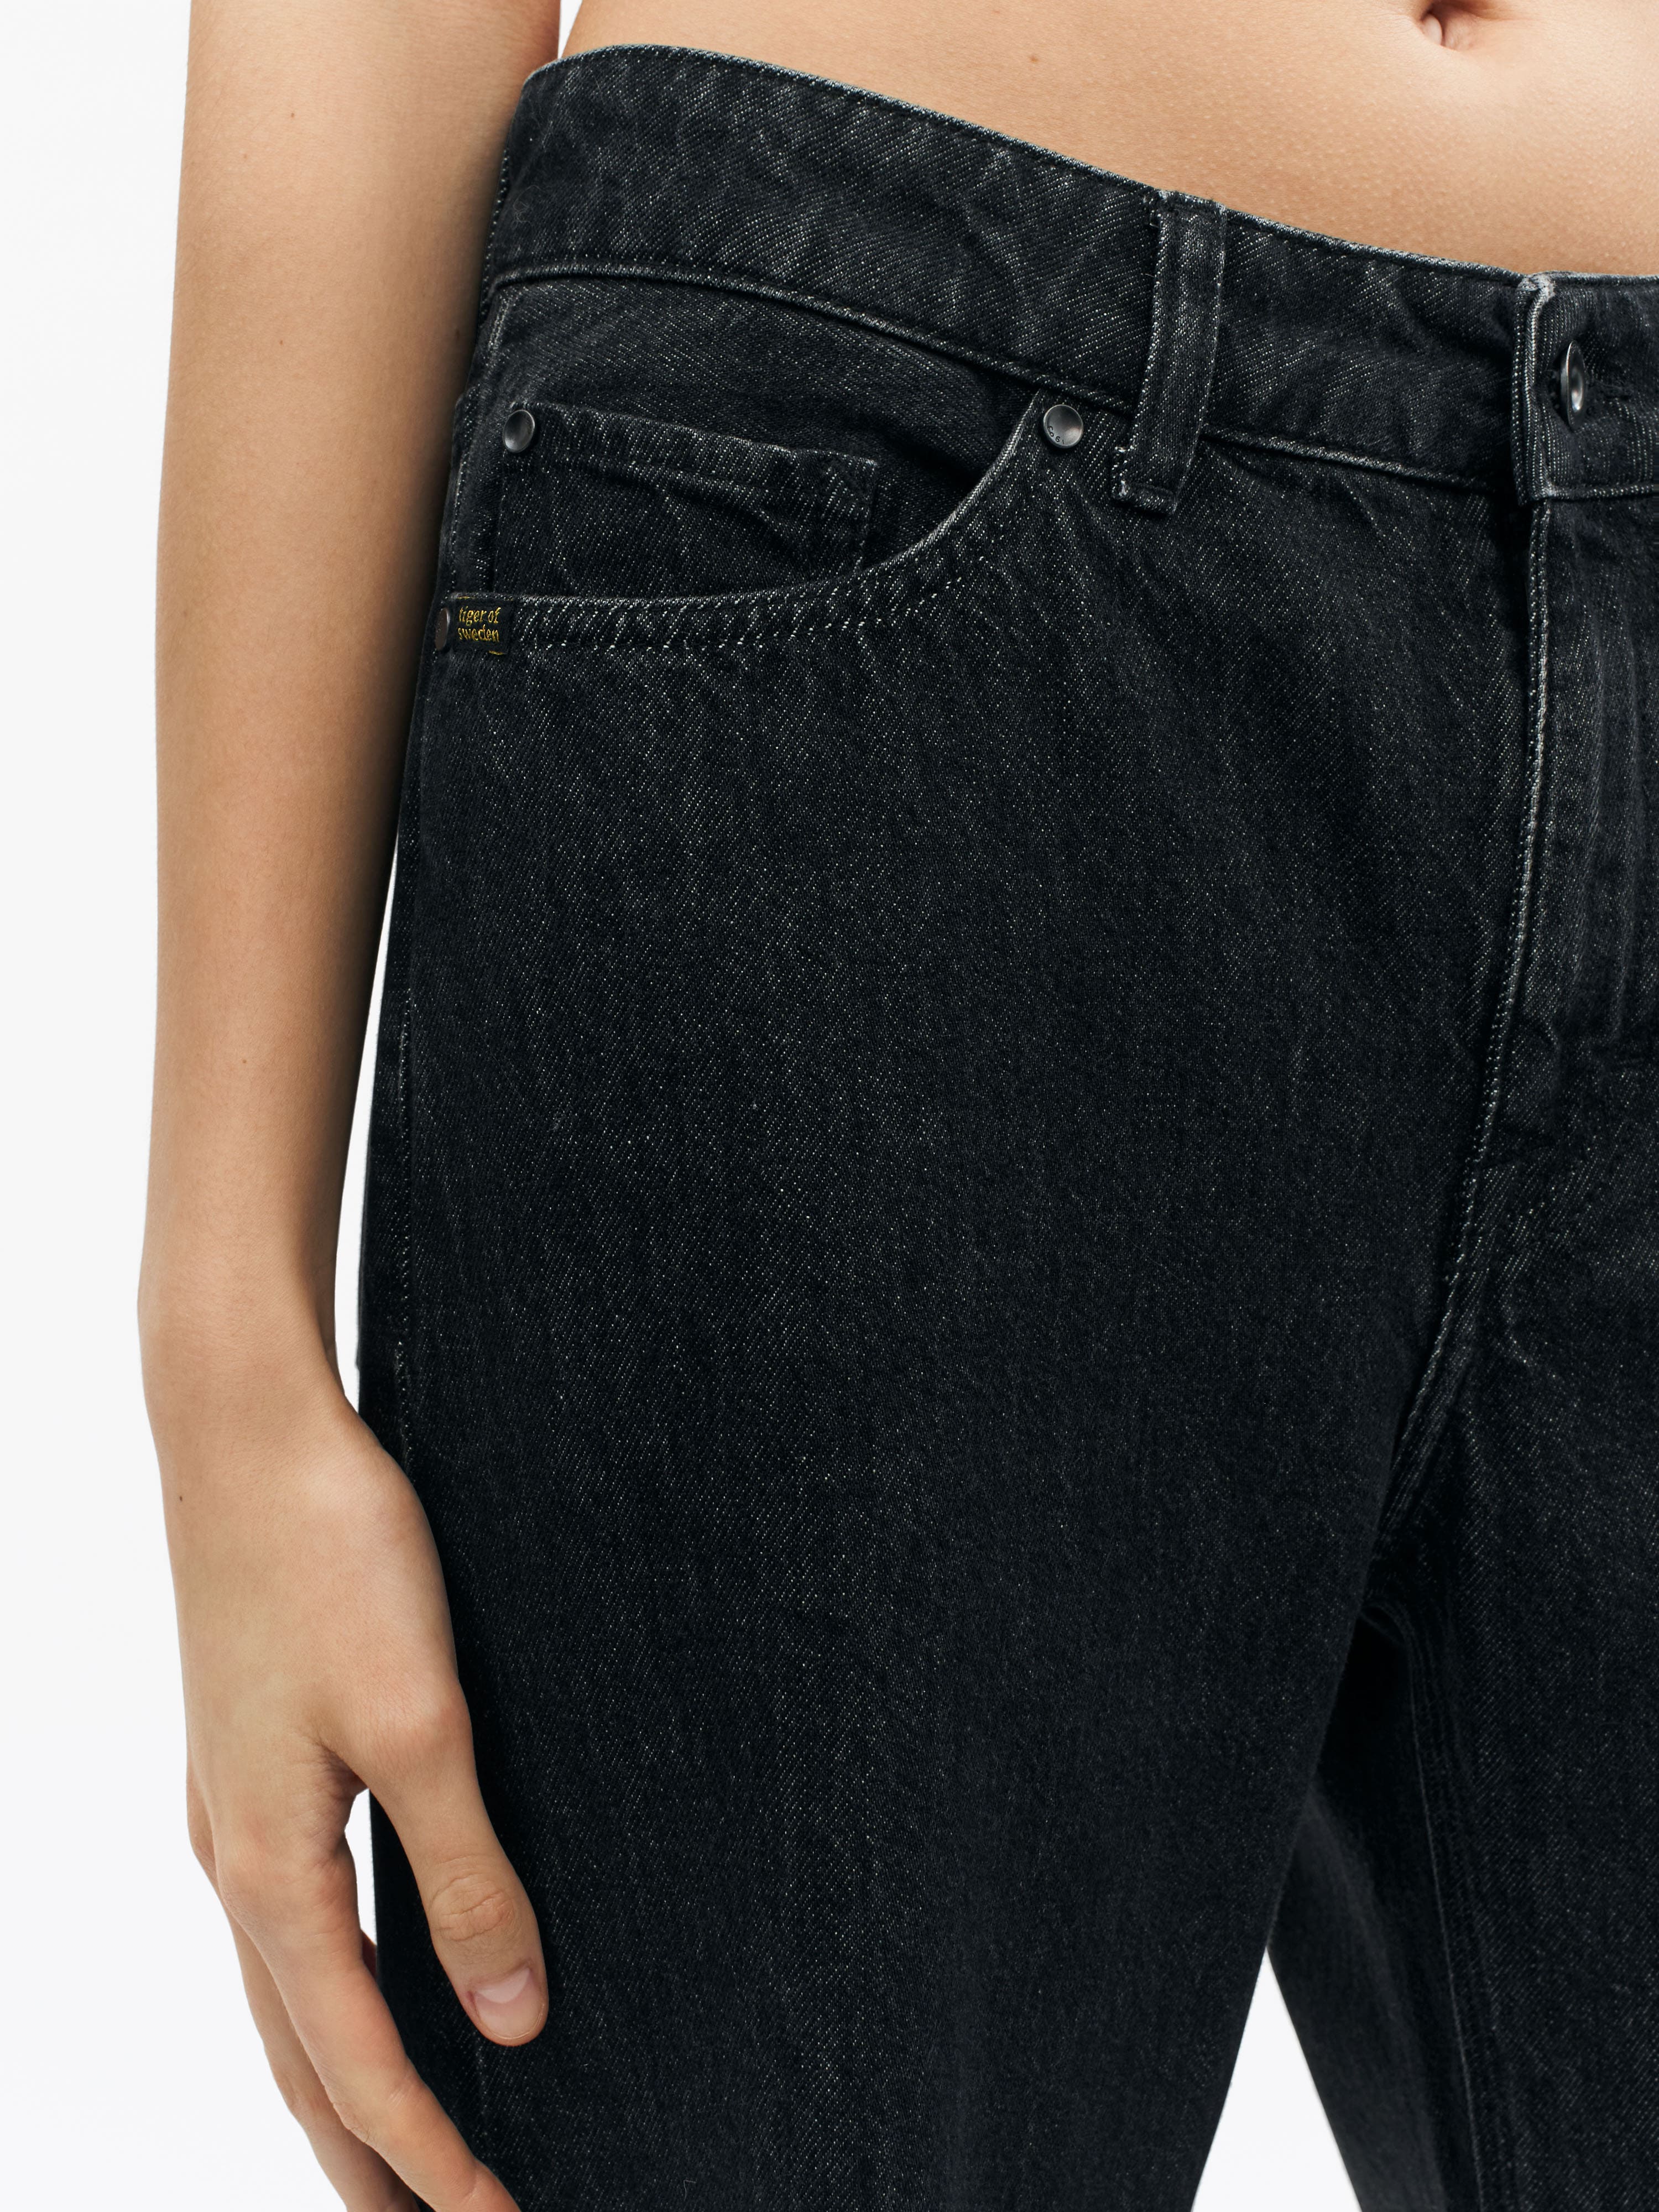 TIGER OF SWEDEN Kinne Jeans in Black S72336001 | eightywingold 